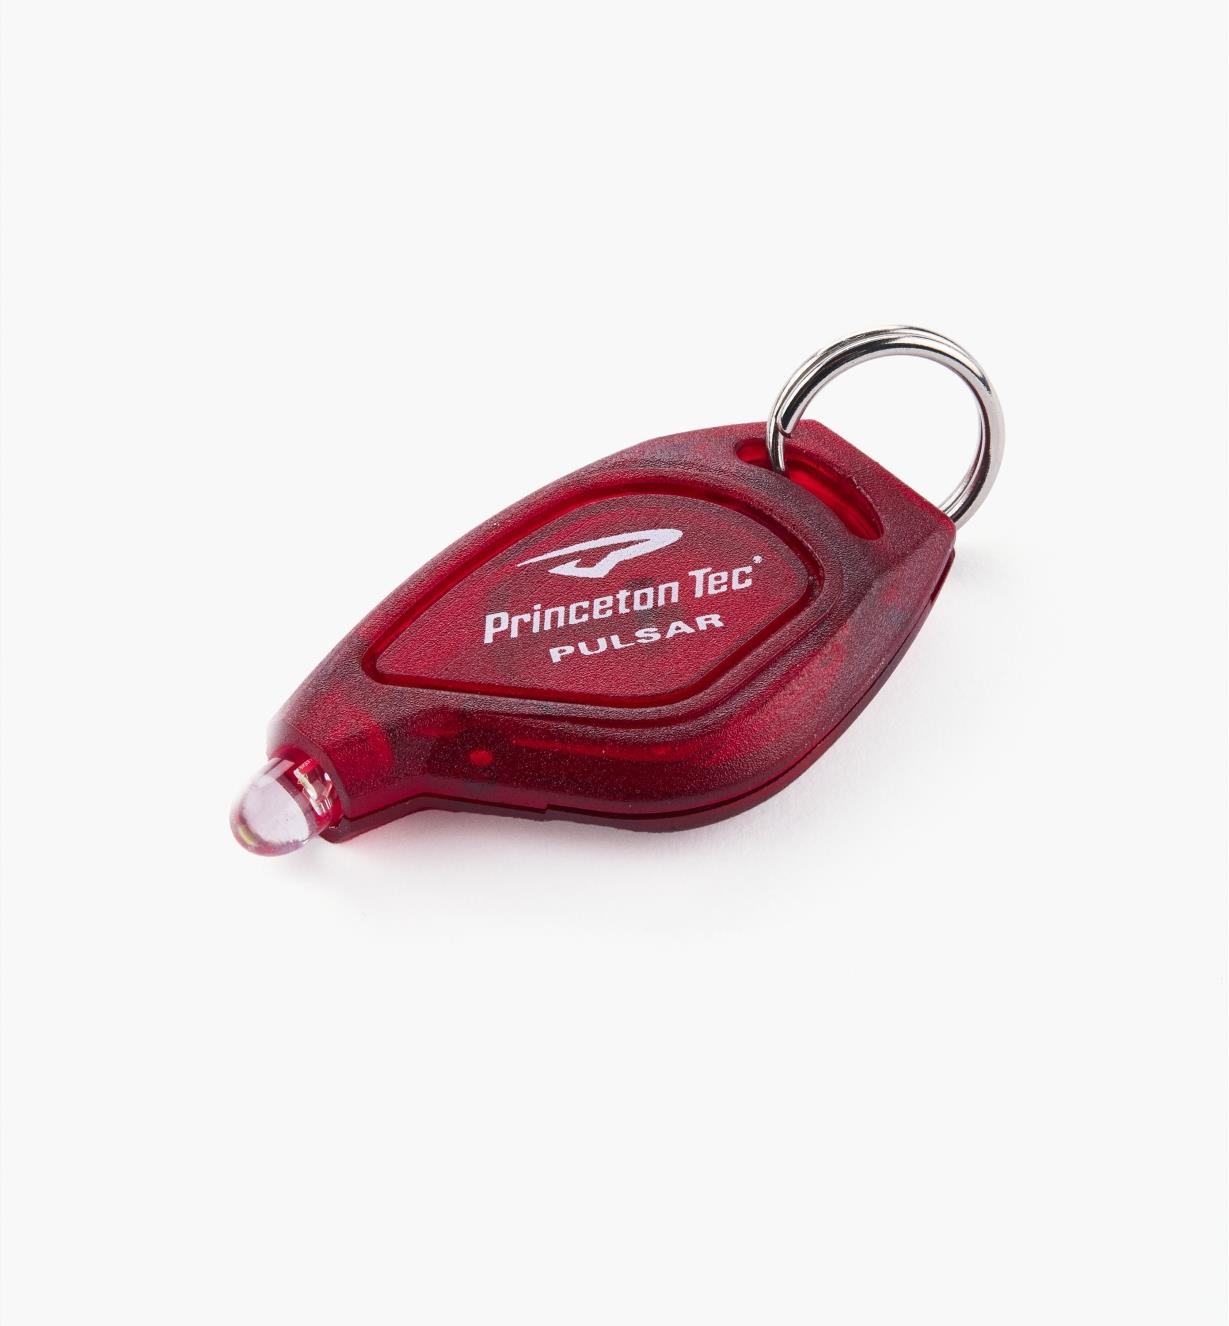 68K0577 - Minilampe à DEL pour porte-clés, rouge